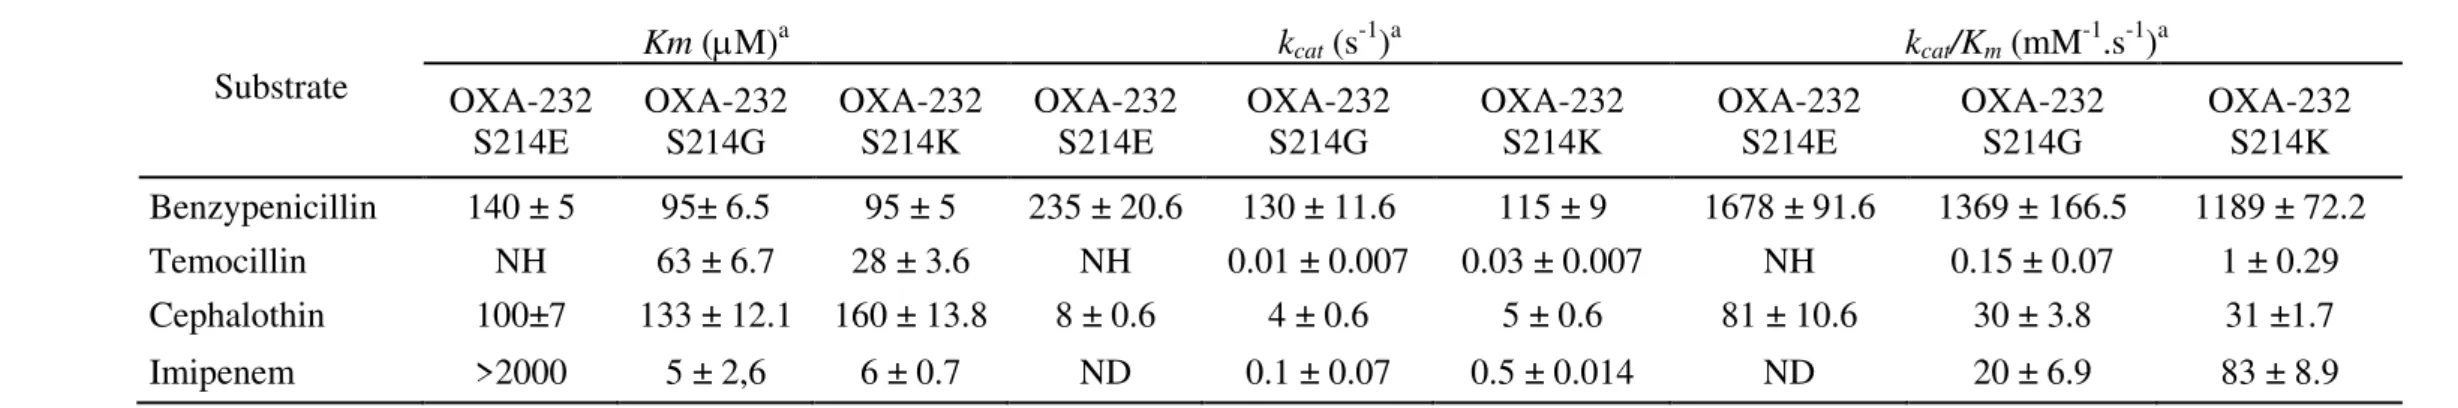 Table 3: Kinetic parameters of OXA-232 mutants 479  480  Substrate  Km (M) a  k cat  (s -1 ) a  k cat /K m  (mM -1 .s -1 ) a  OXA-232     S214E  OXA-232 S214G  OXA-232 S214K  OXA-232    S214E  OXA-232 S214G  OXA-232 S214K  OXA-232      S214E  OXA-232 S214